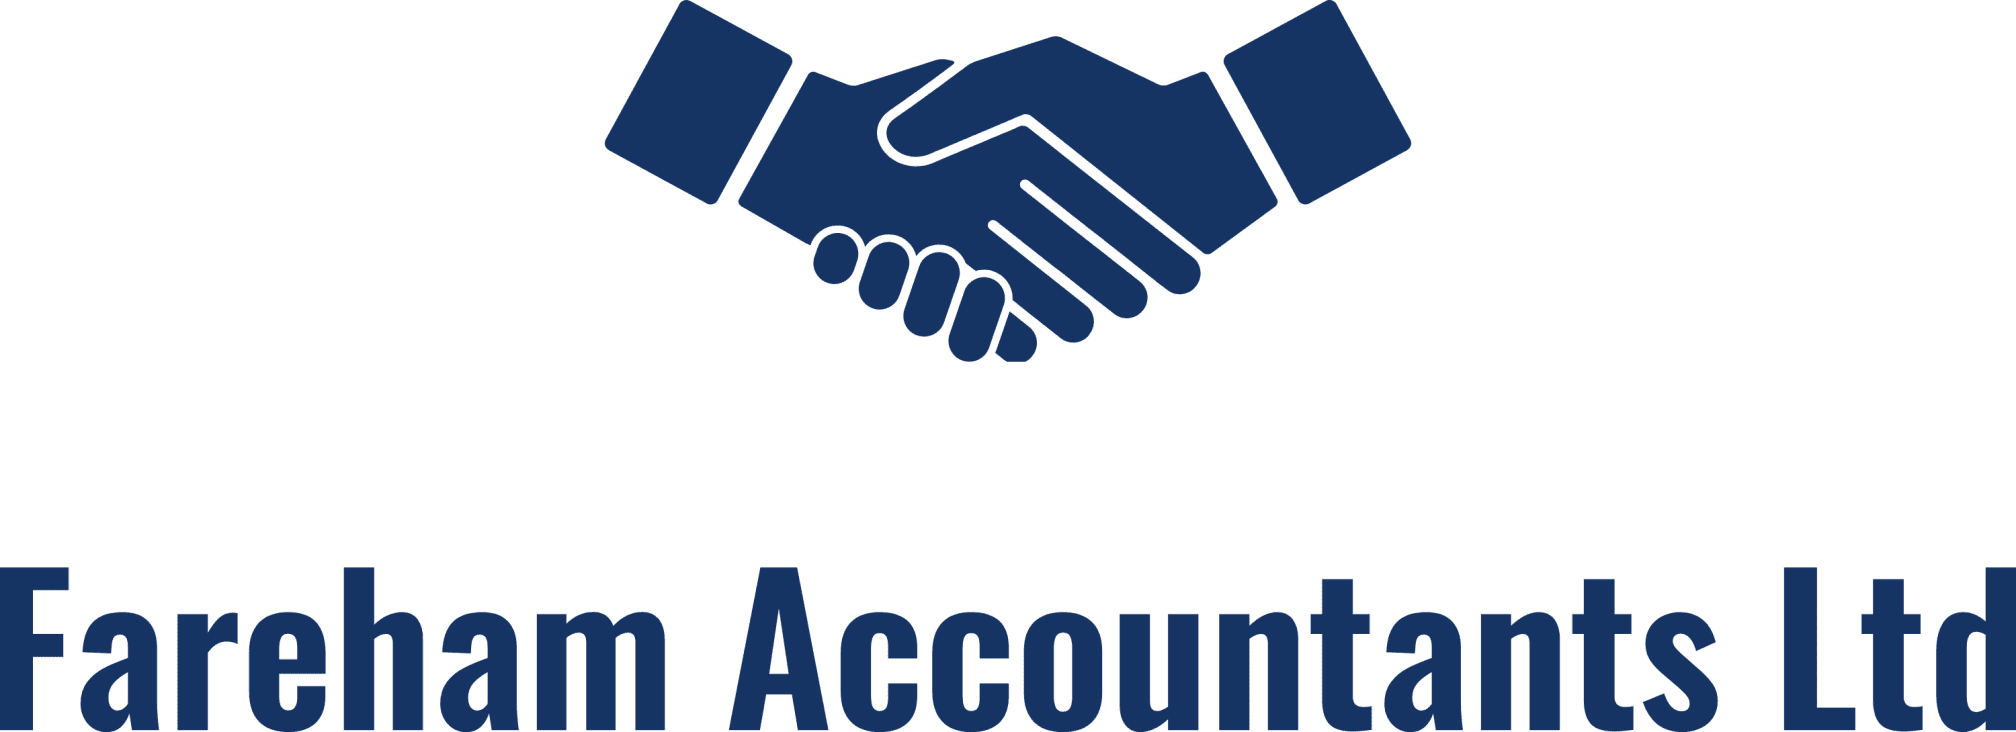 Images Fareham Accountants Ltd